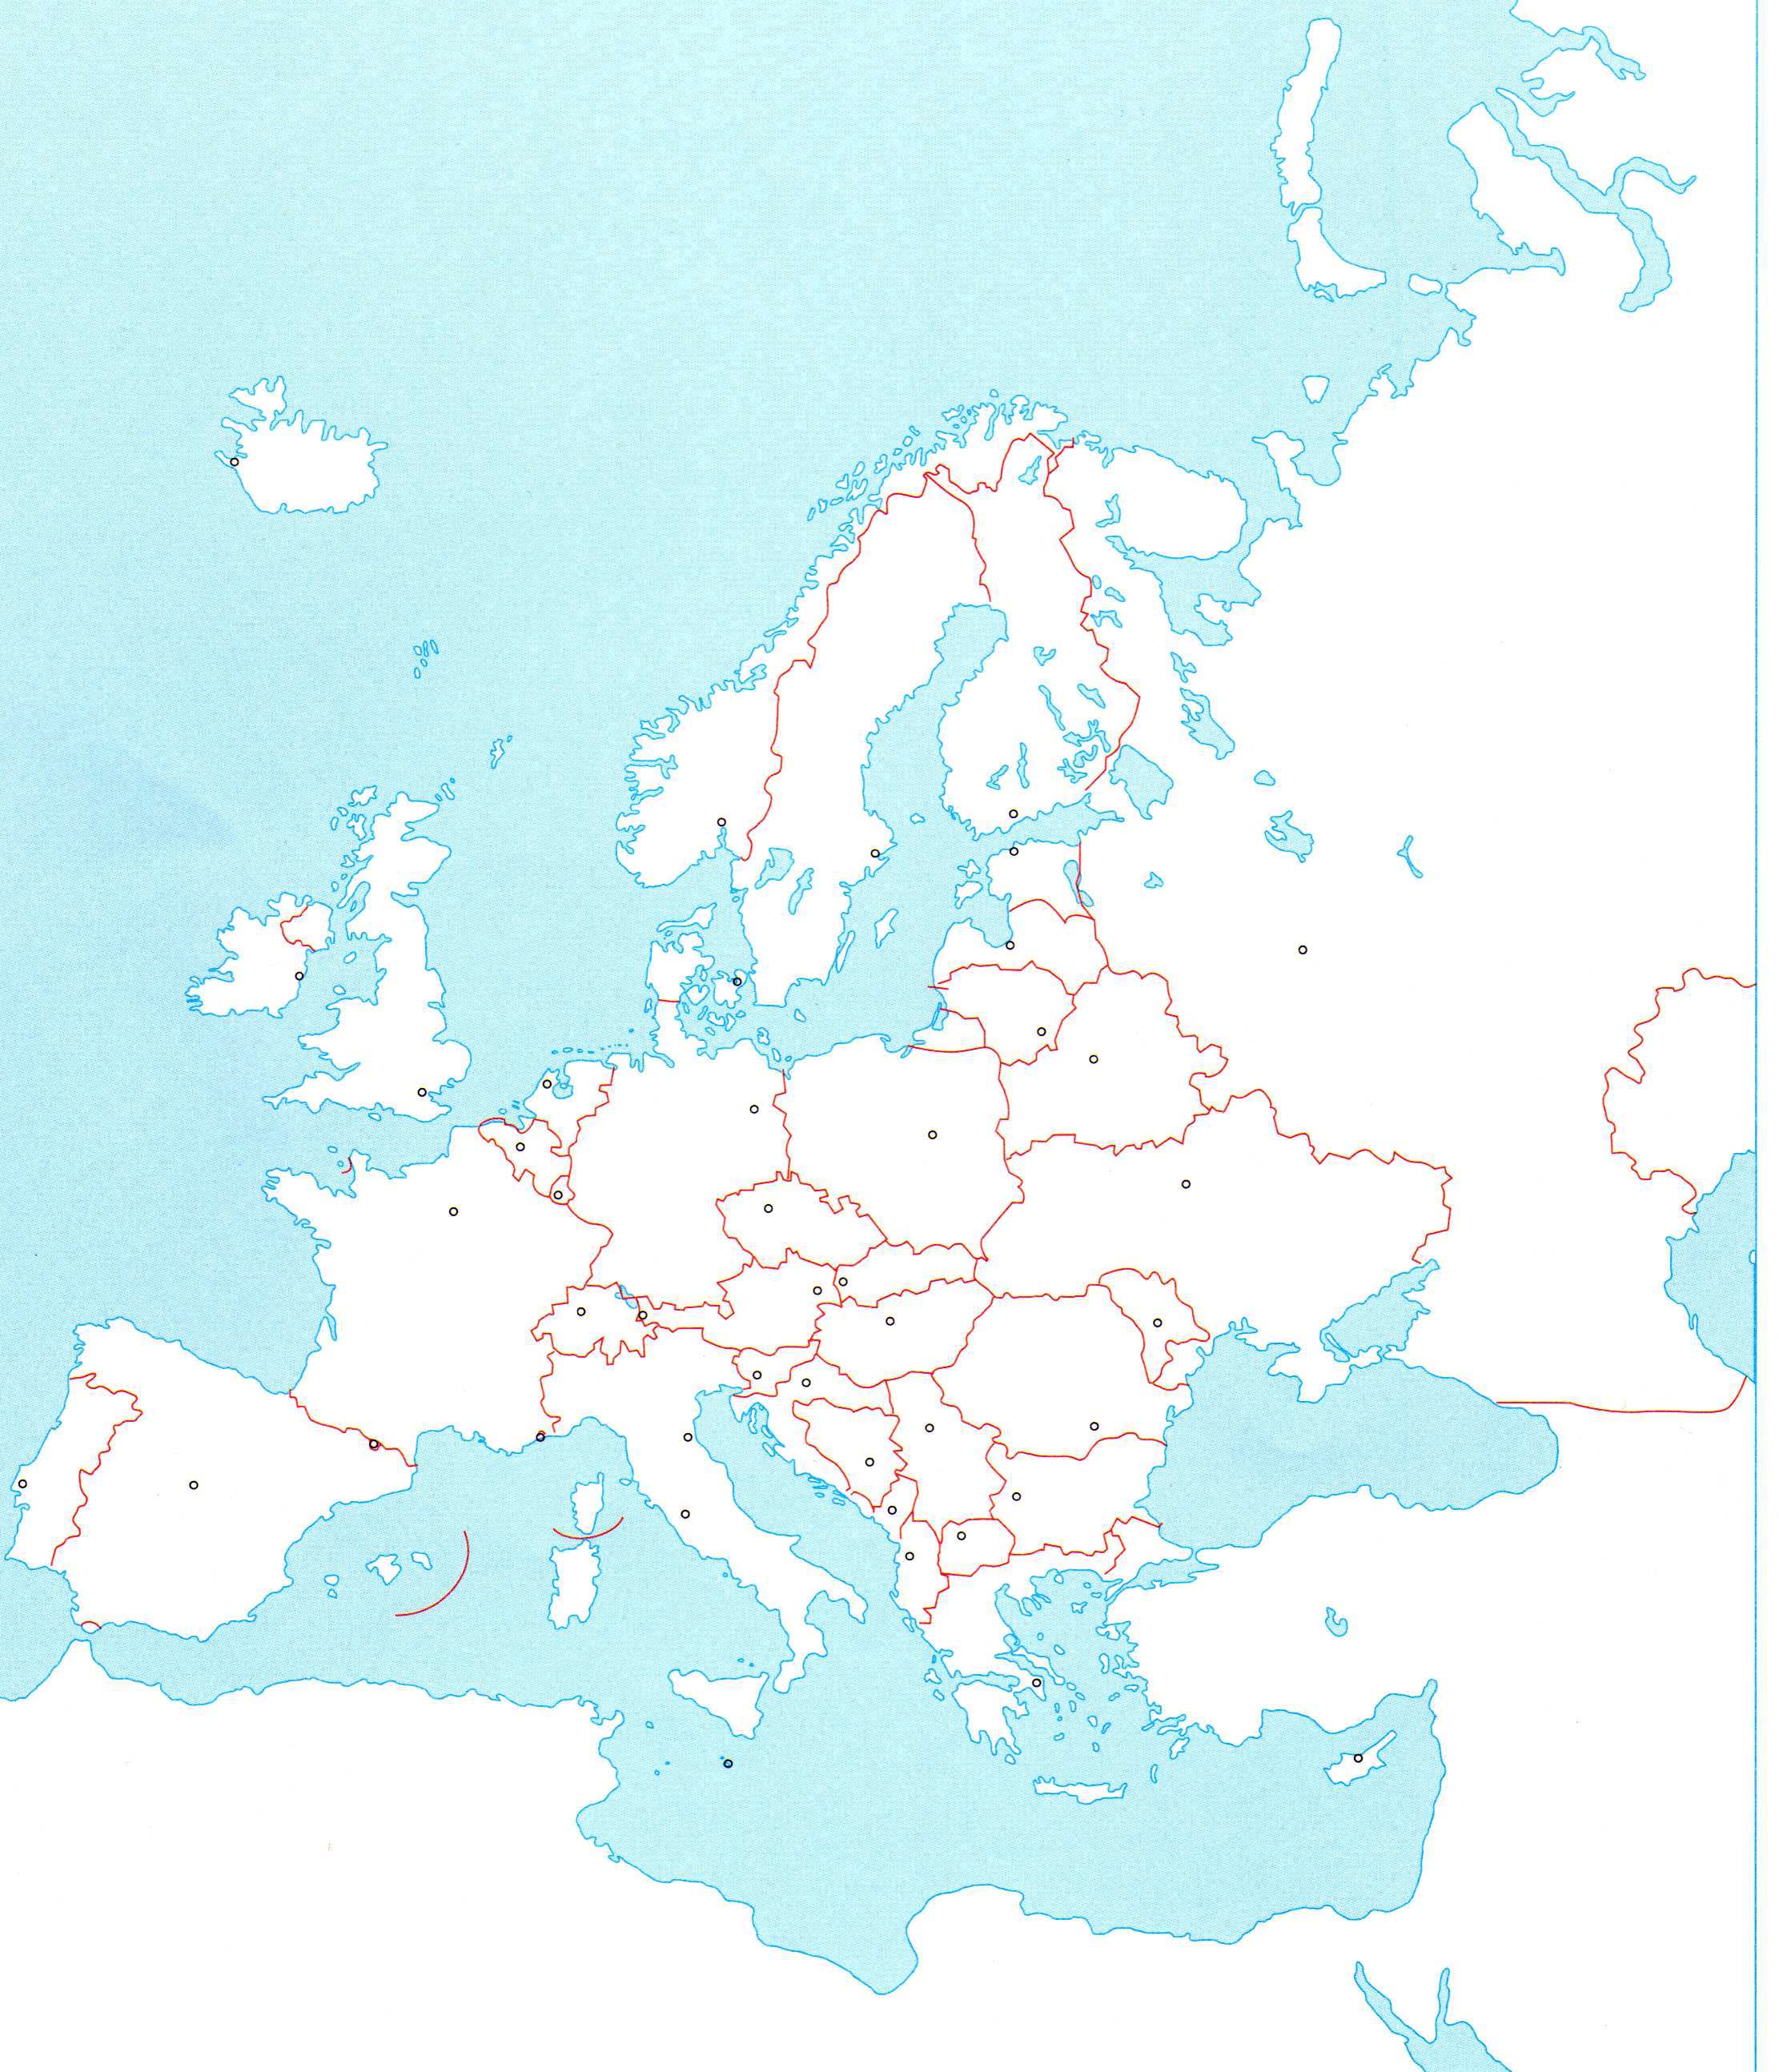 sjeverna europa slijepa karta Osnovna škola Fažana   7.razred sjeverna europa slijepa karta